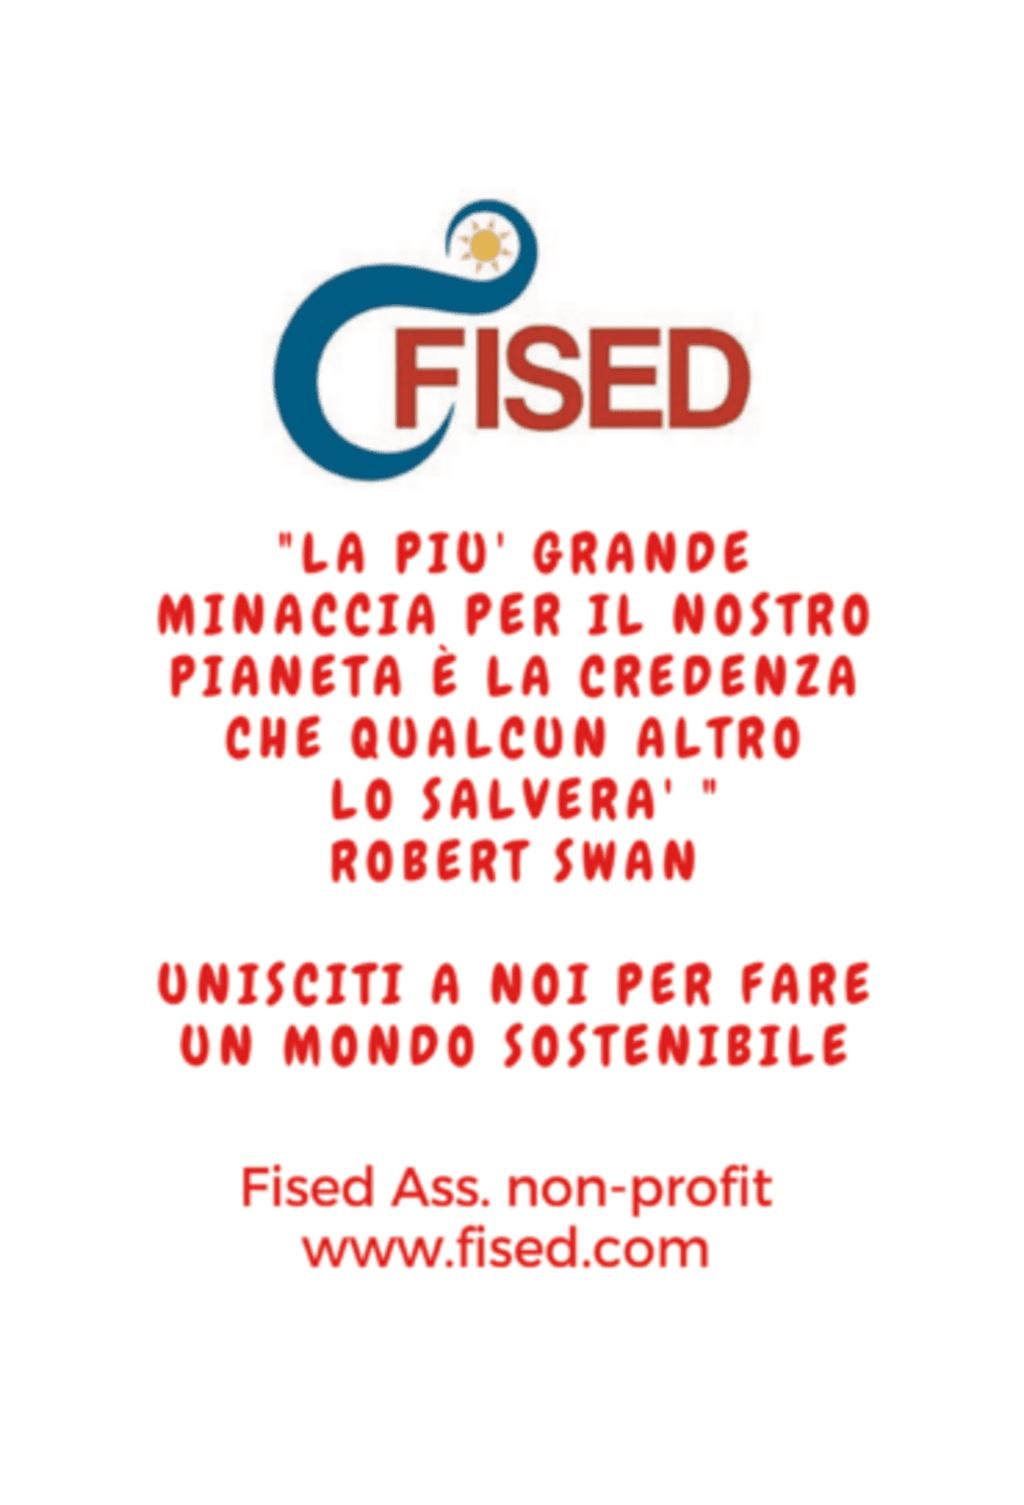 Fised Ass. non-profit